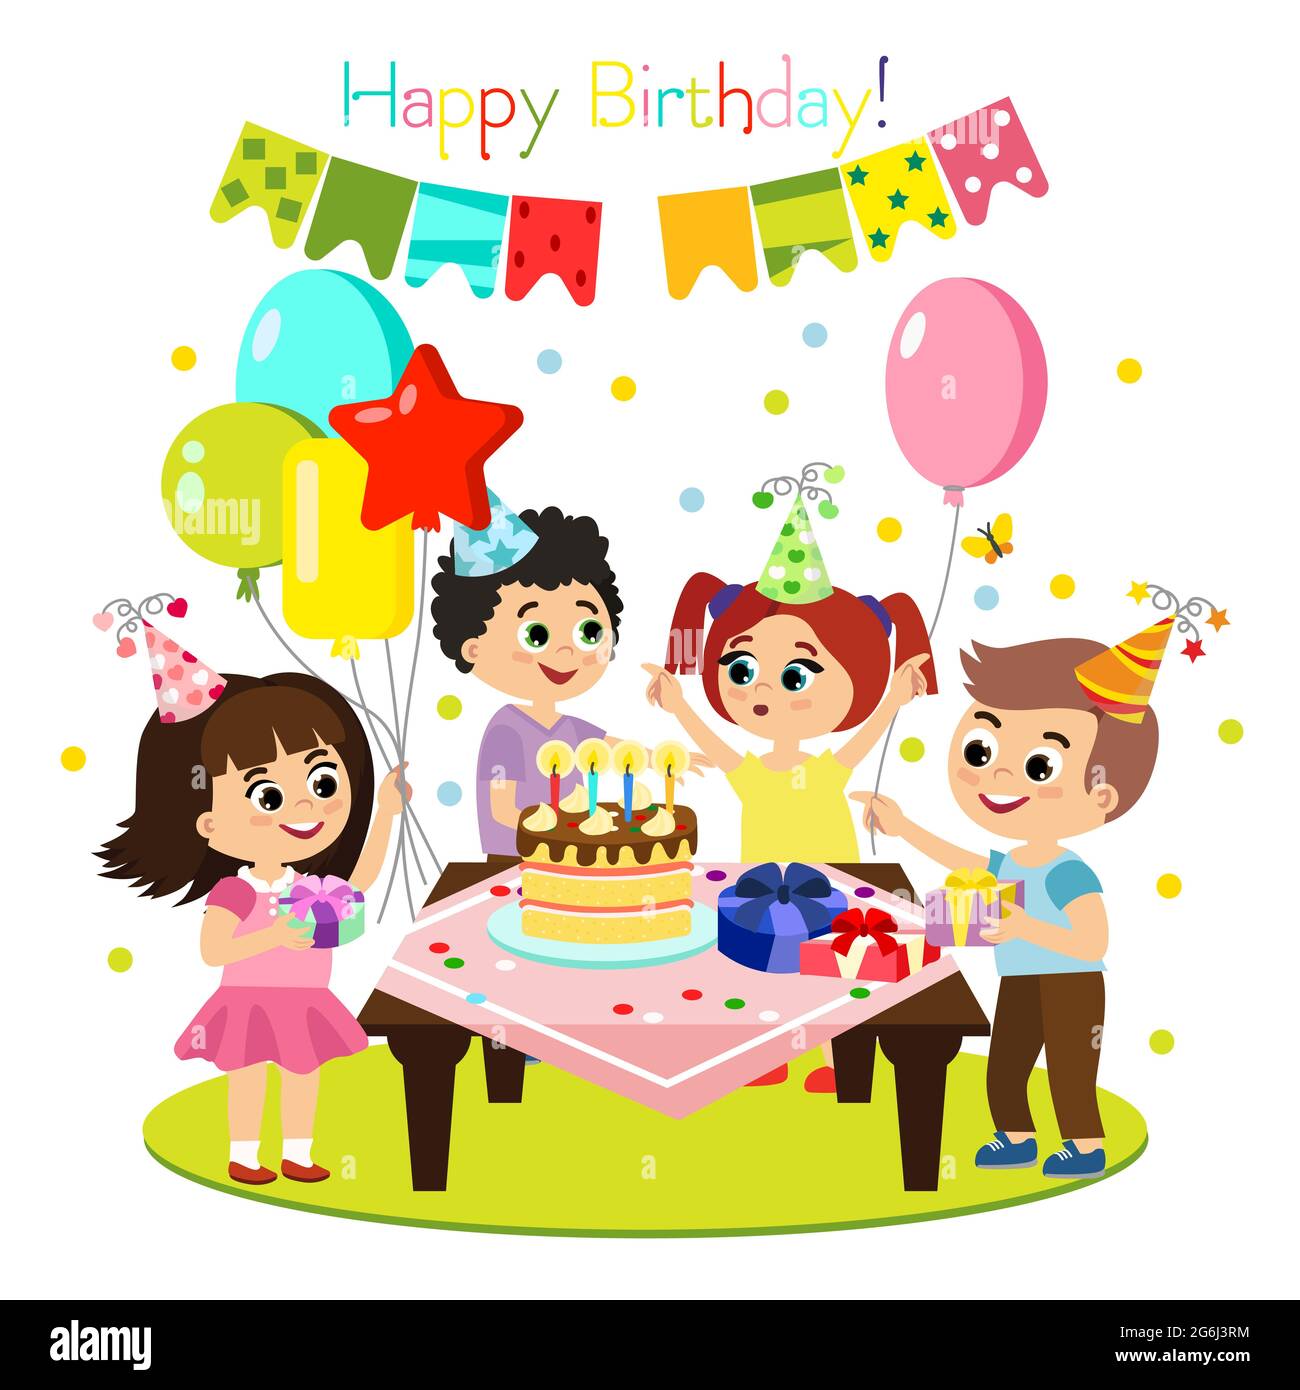 Illustrazione vettoriale della festa di compleanno dei bambini, decorazione colorata e luminosa, bambini felici hanno divertimento insieme, ragazze e ragazzi in stile cartone animato piatto. Illustrazione Vettoriale